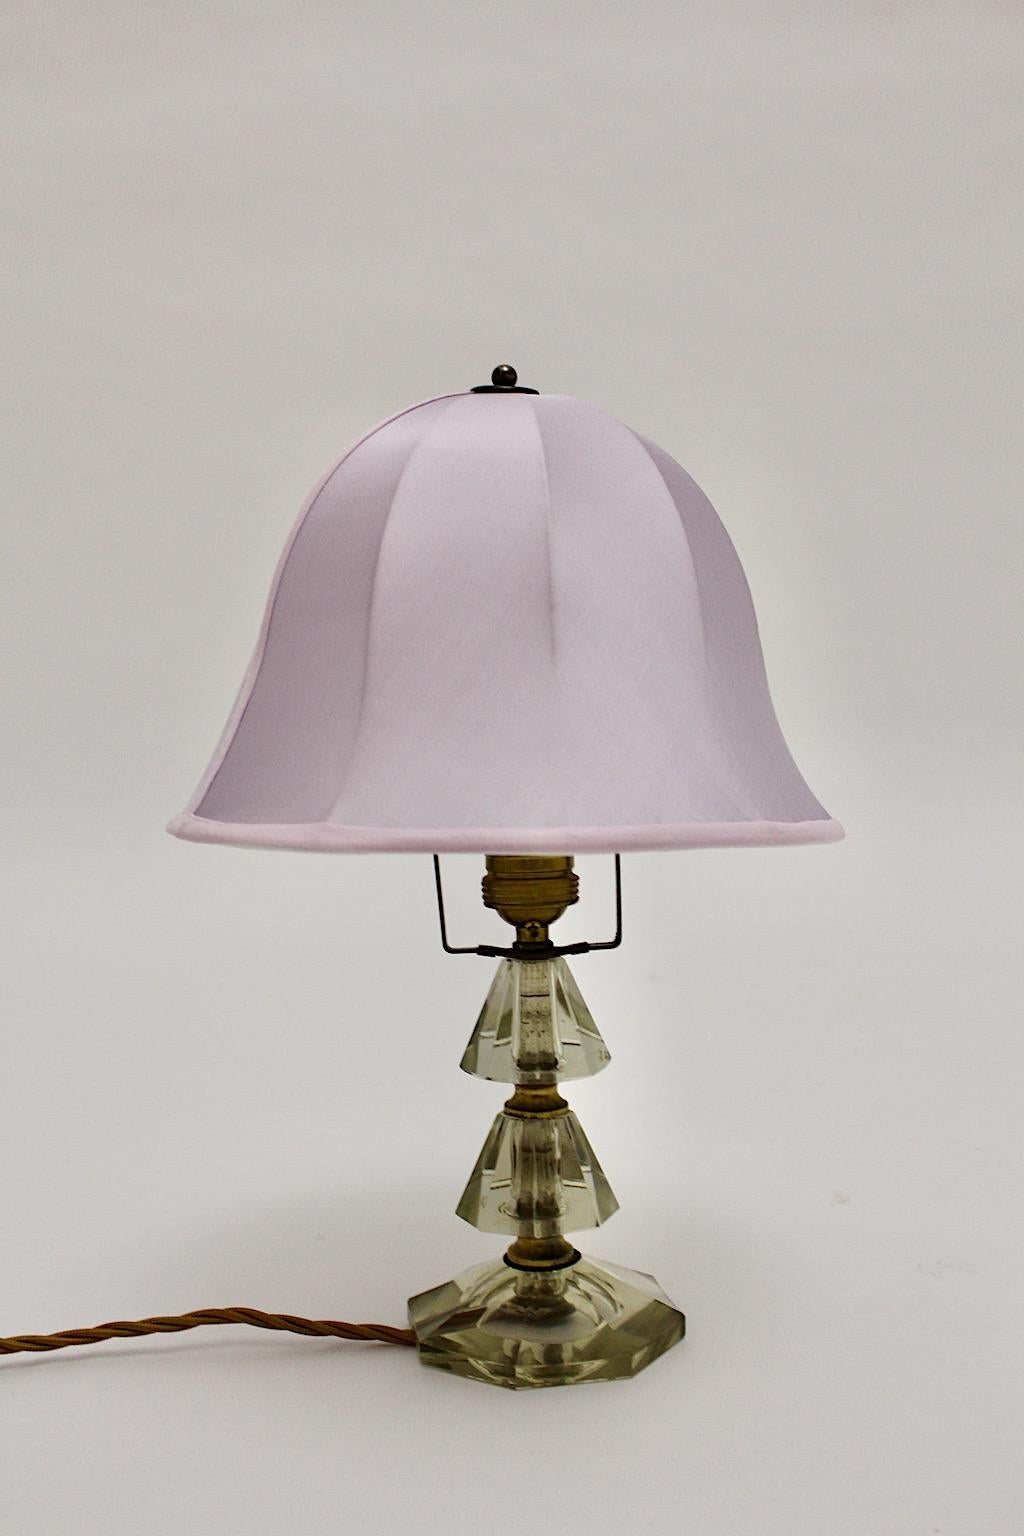 Mid Century Modern Vintage Tischlampe aus geschliffenem Glas und Messing von Bakalowits & Söhne 1950s Wien.
Während der Sockel der Tischleuchte geometrische Elemente aus geschliffenem Klarglas zeigt, ist der glockenförmige Lampenschirm in